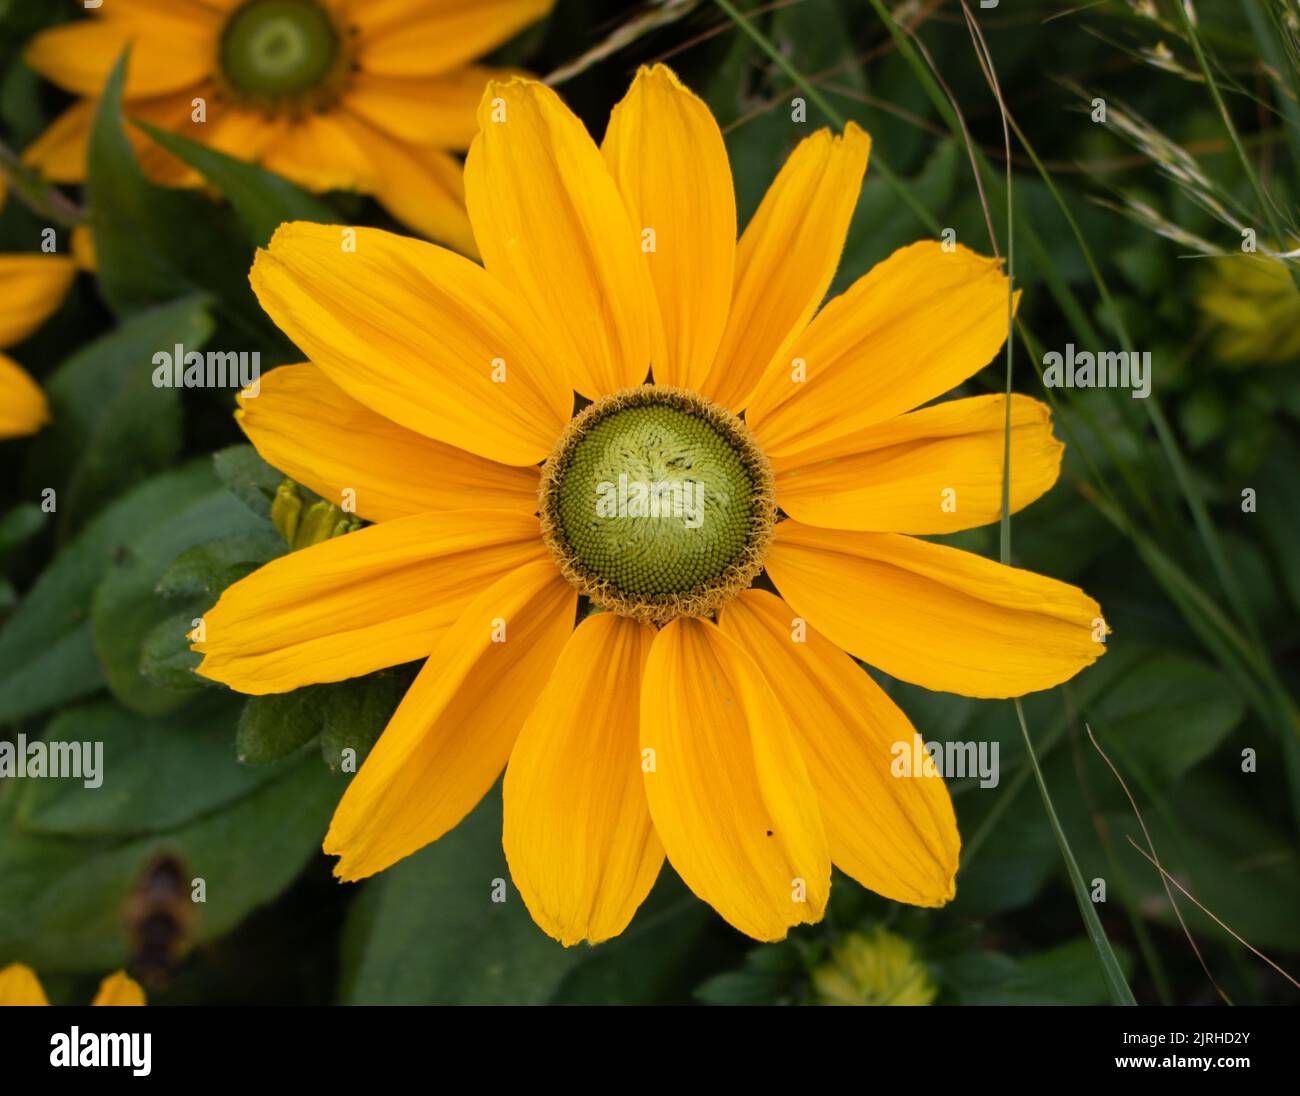 Bright yellow flower in bloom, Cheshire, UK Stock Photo